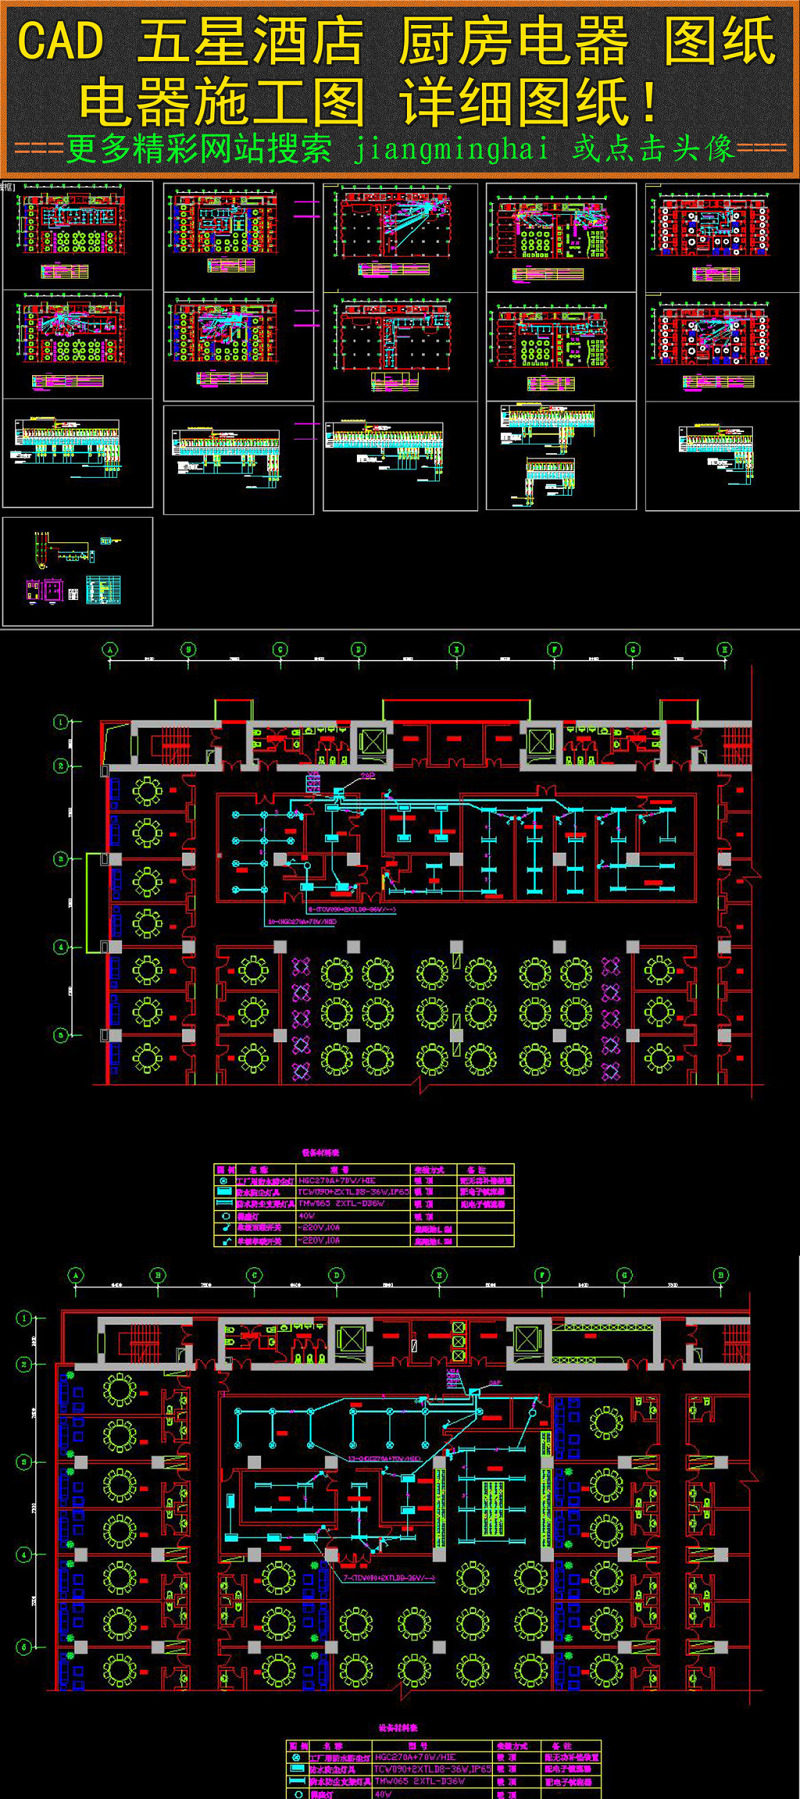 原创五星酒店厨房CAD电器图纸